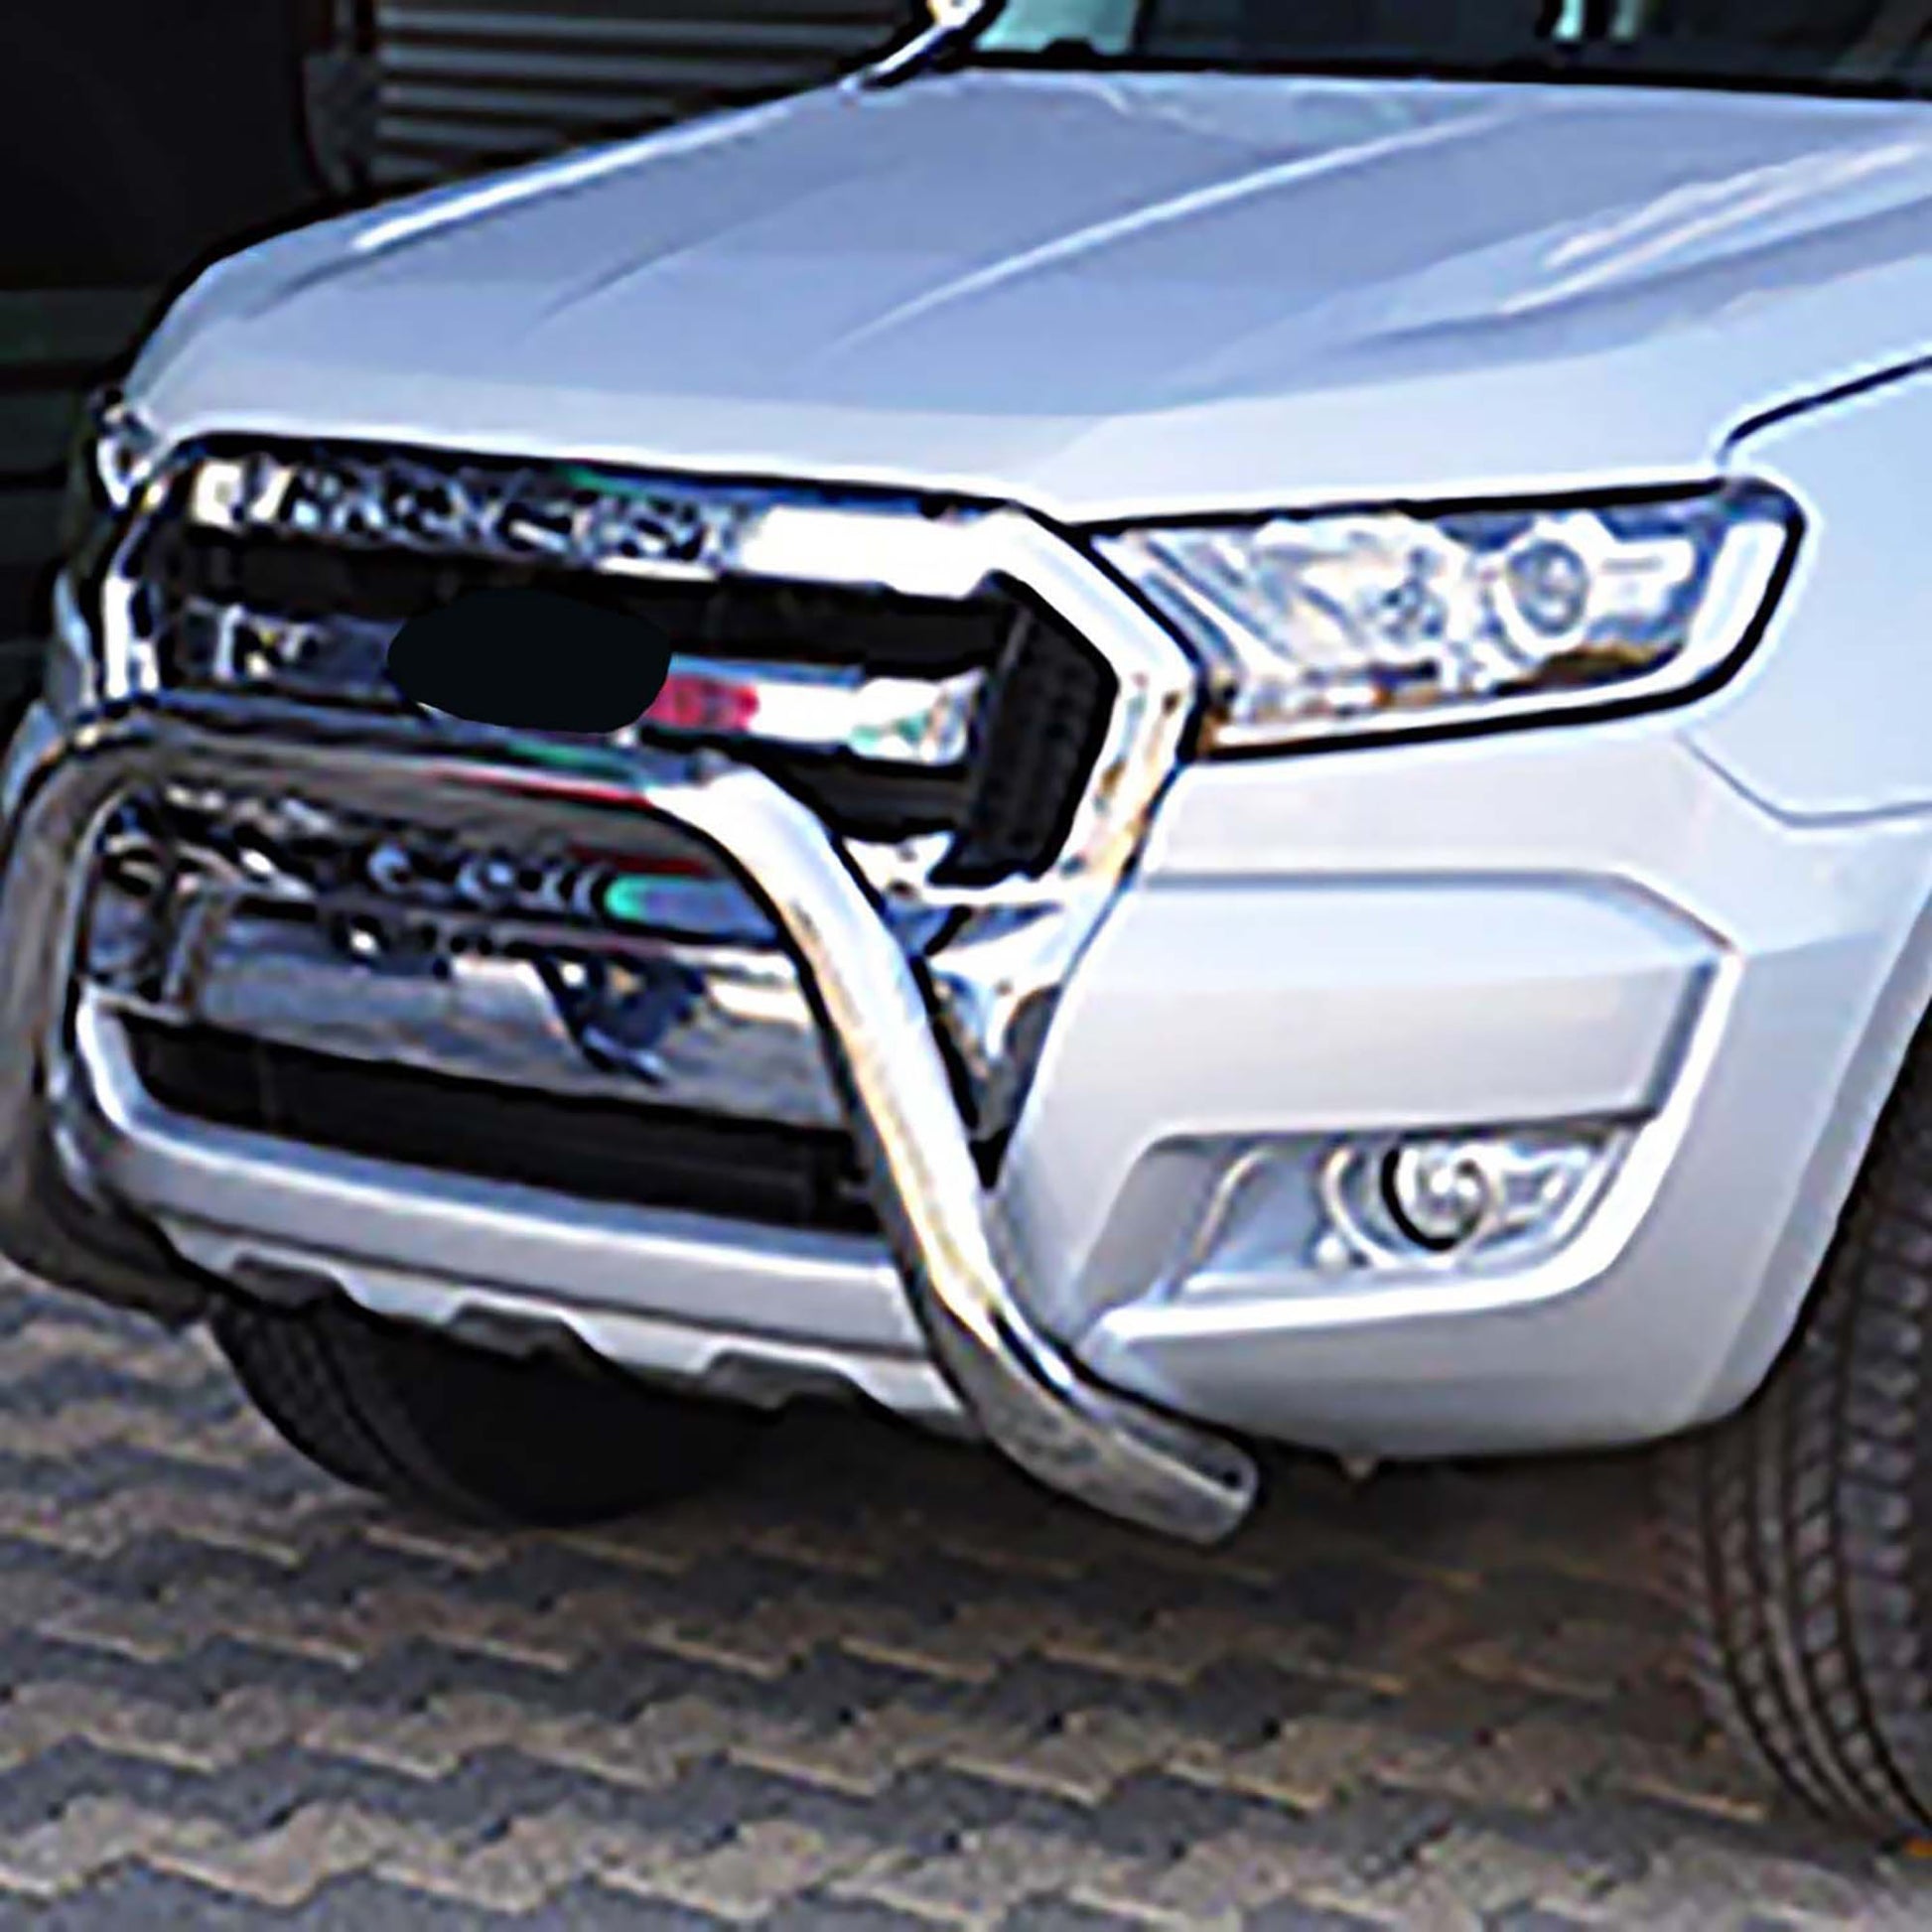 Toyota Hilux Ön Koruma - Pars - Krom Aksesuarları Detaylı Resimleri, Kampanya bilgileri ve fiyatı - 7